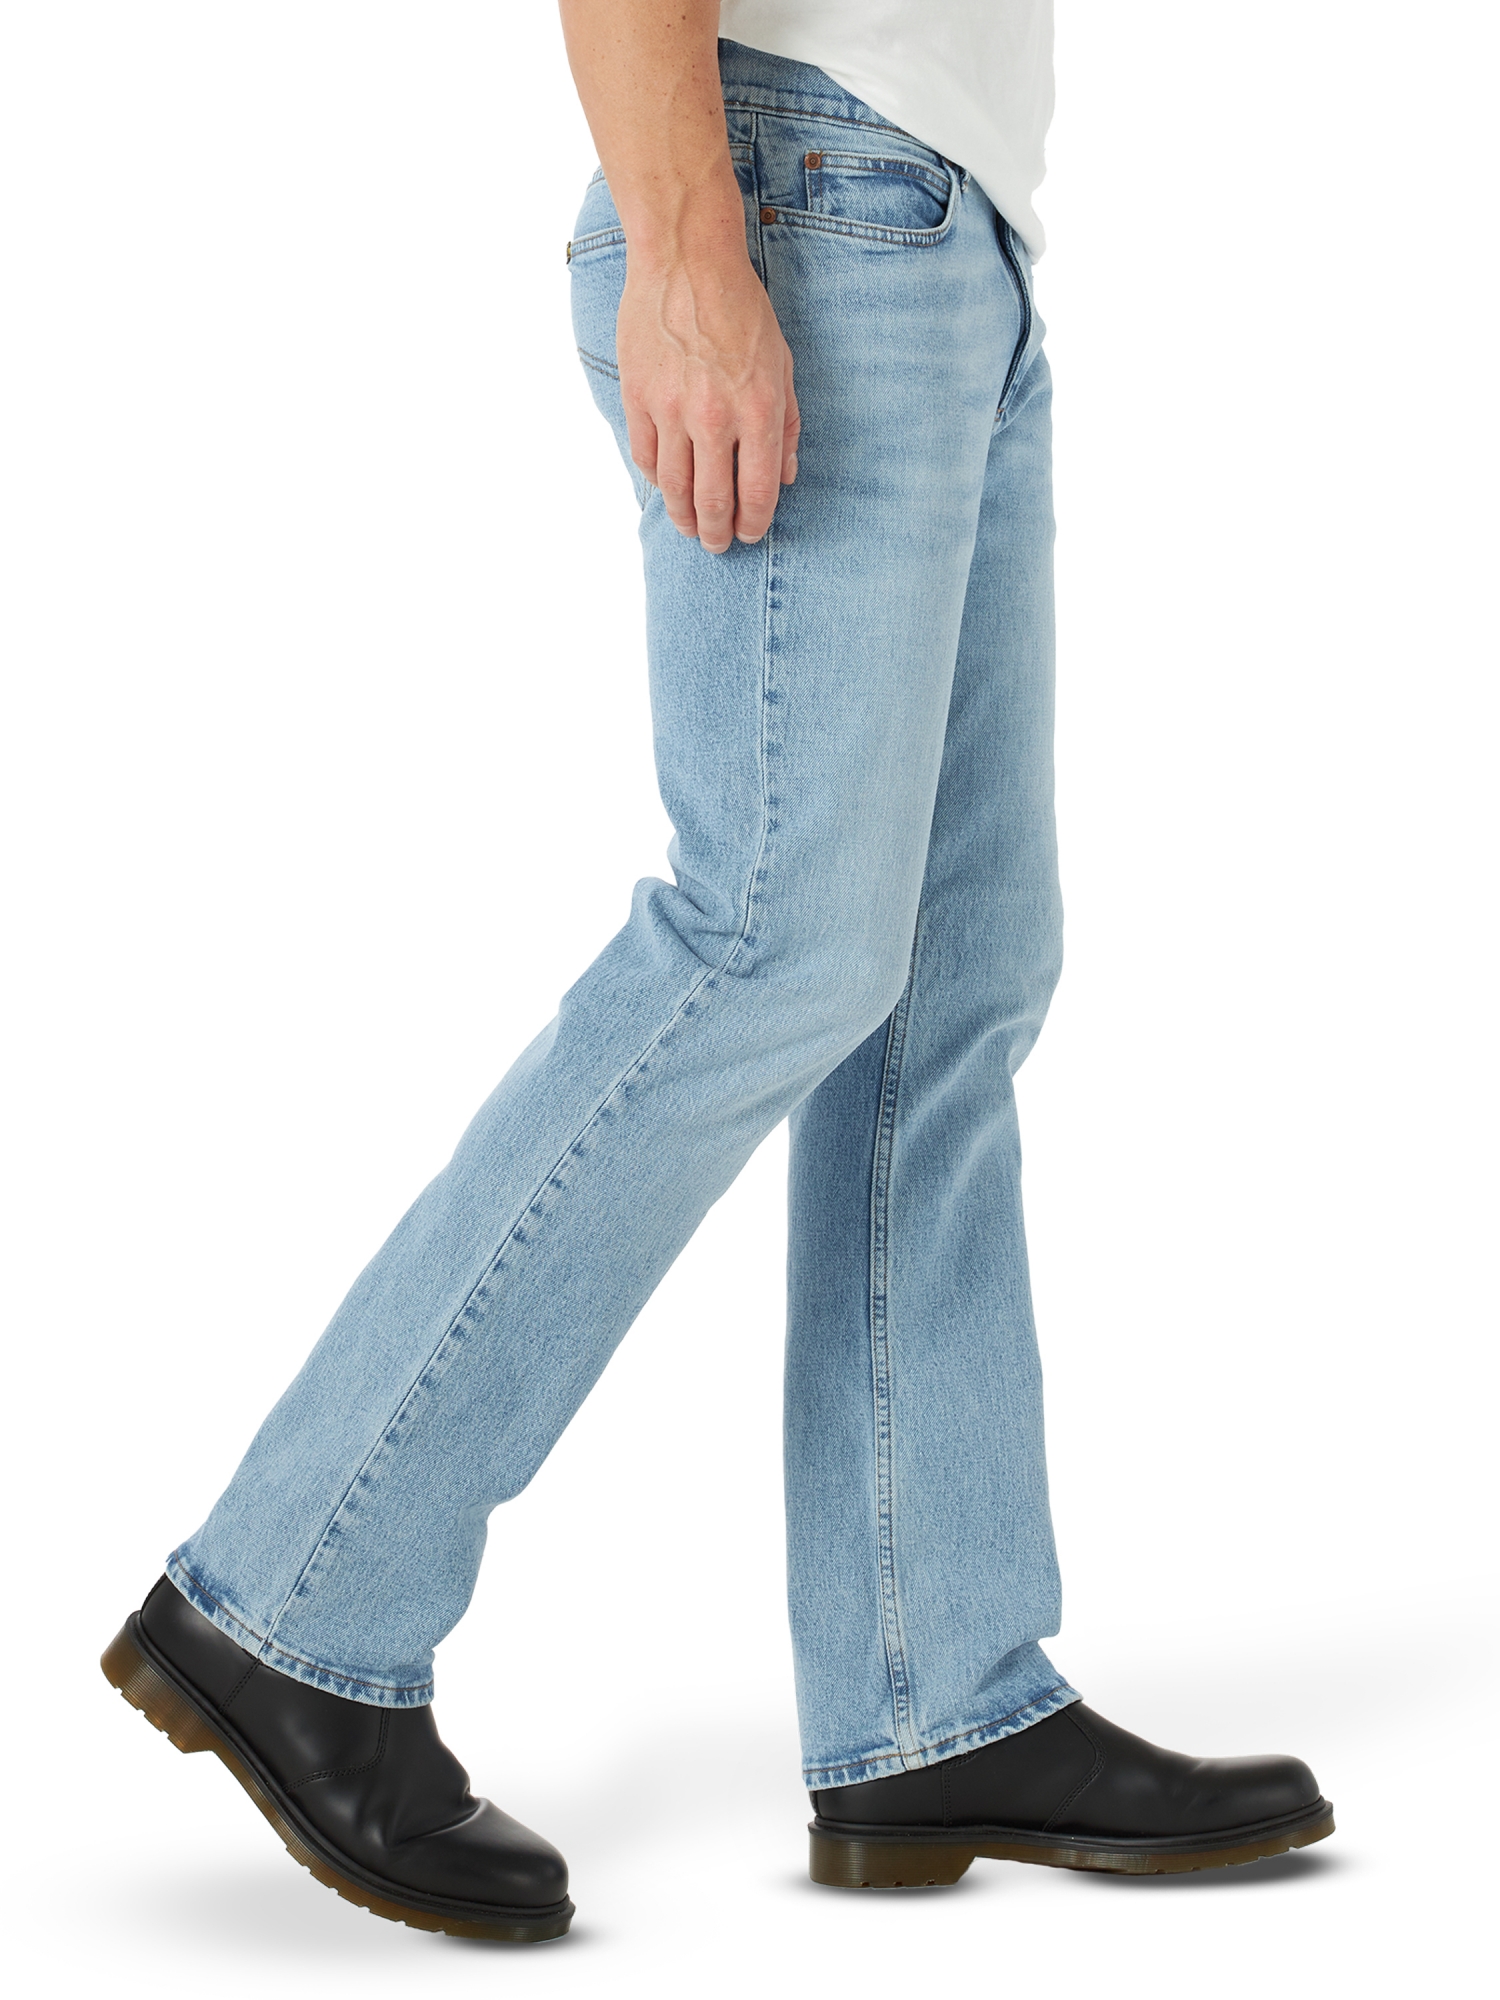 Lee Men's Legendary Denim Regular Bootcut Stretch Jeans - Walmart.com